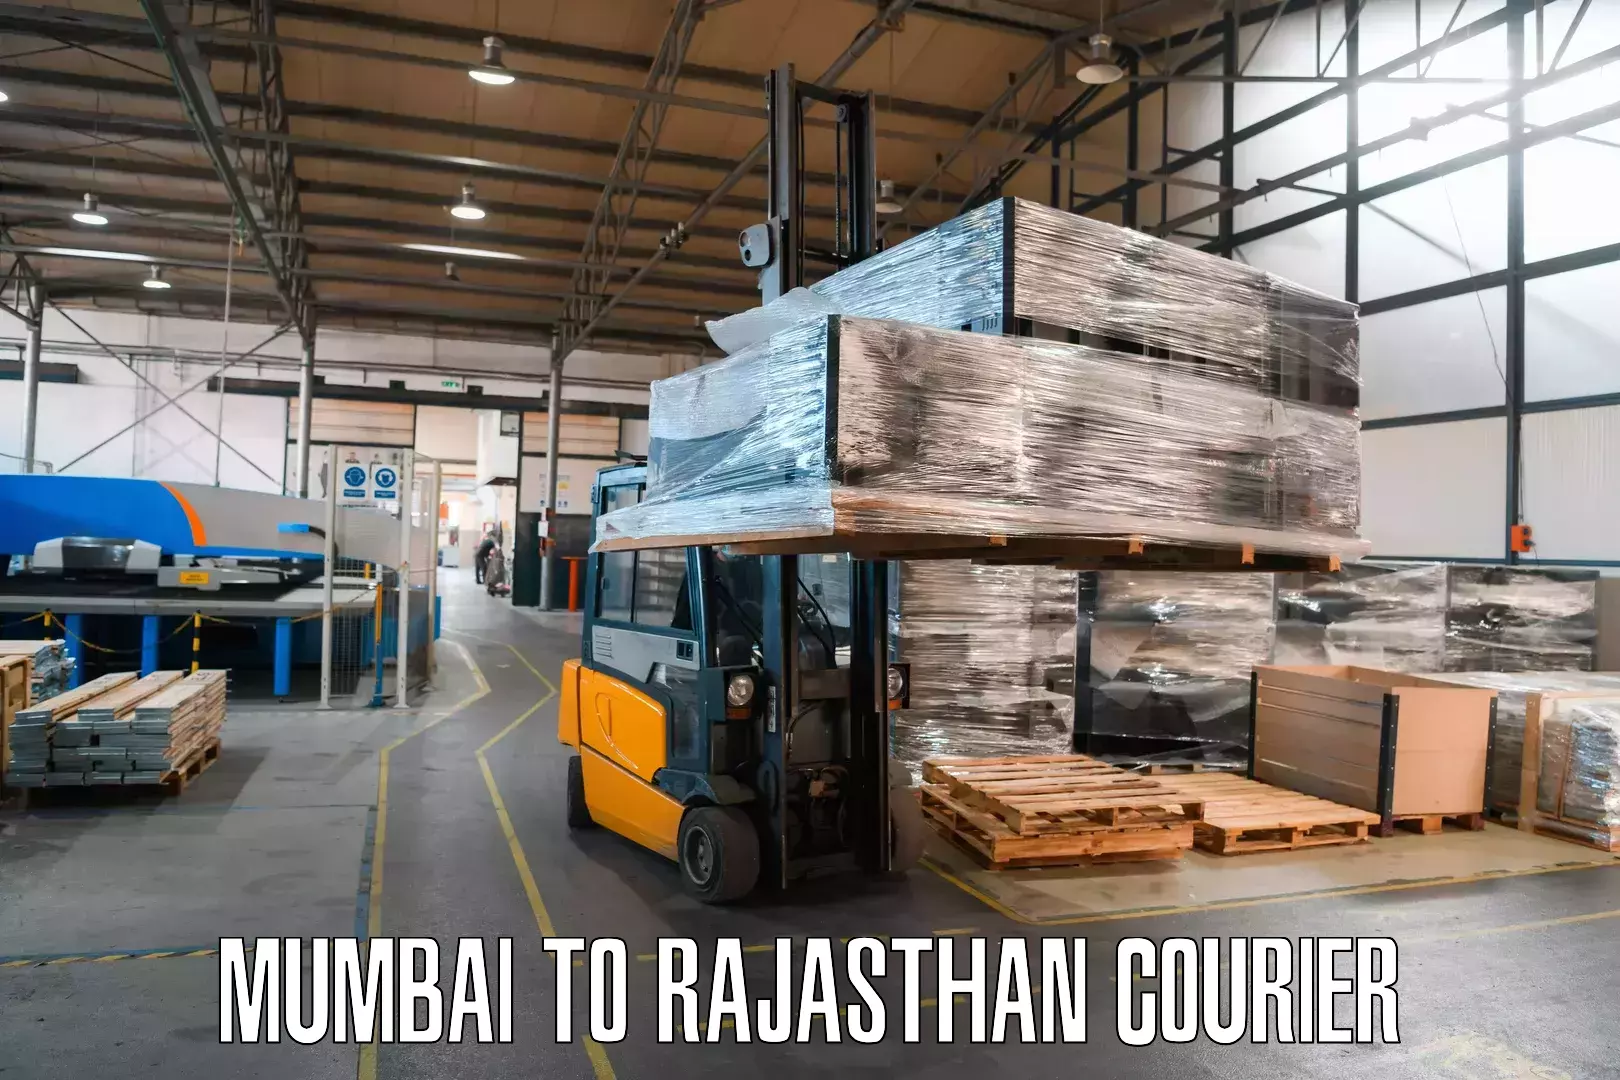 Courier service booking Mumbai to Baran